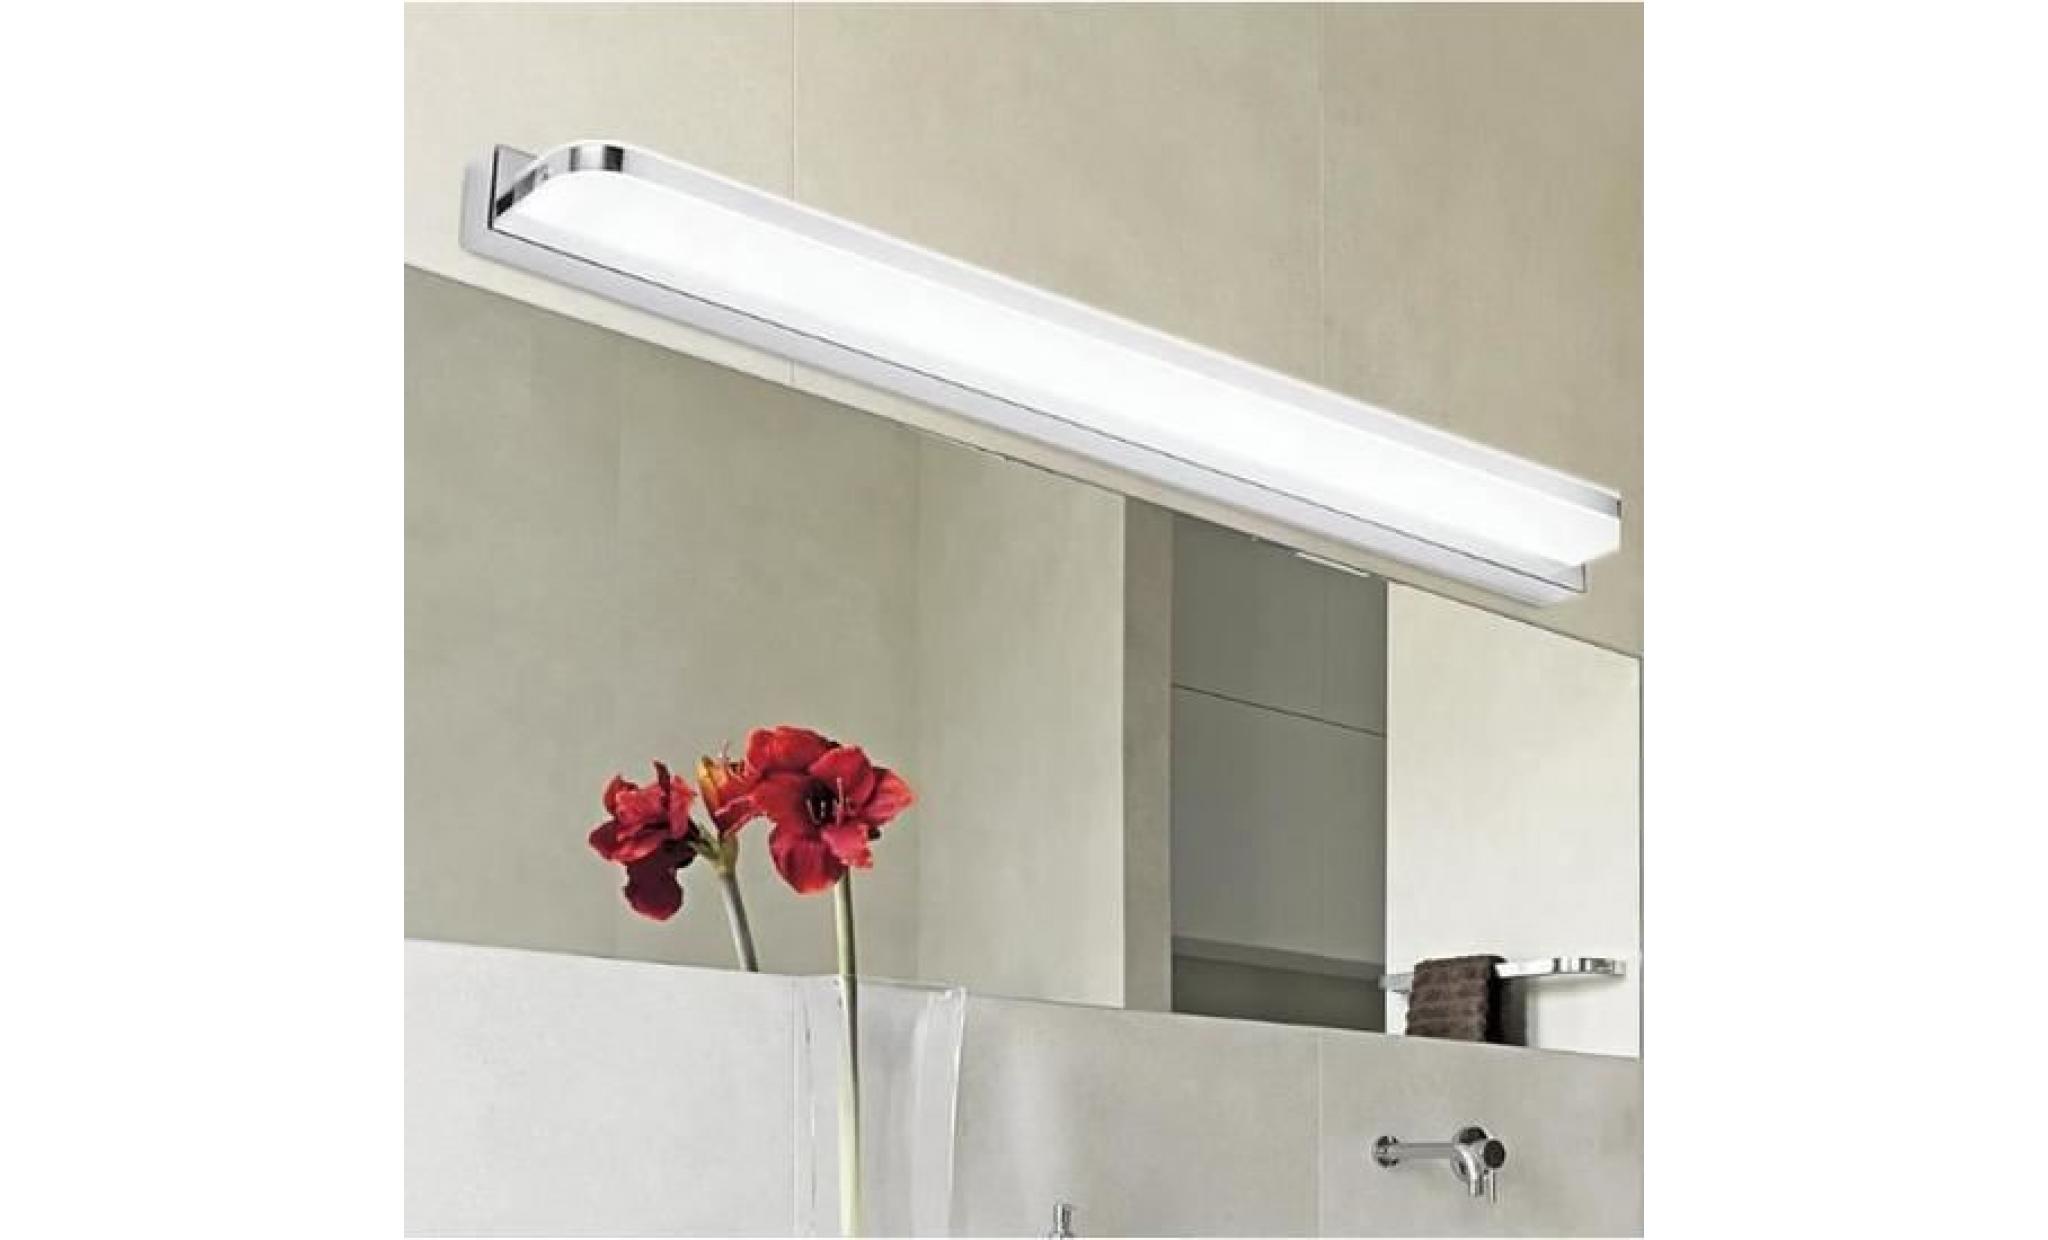 （blanc）9w 42cm acrylique led miroir de courtoisie lampe chambre salle de bain toilette coins arrondis applique murale pas cher